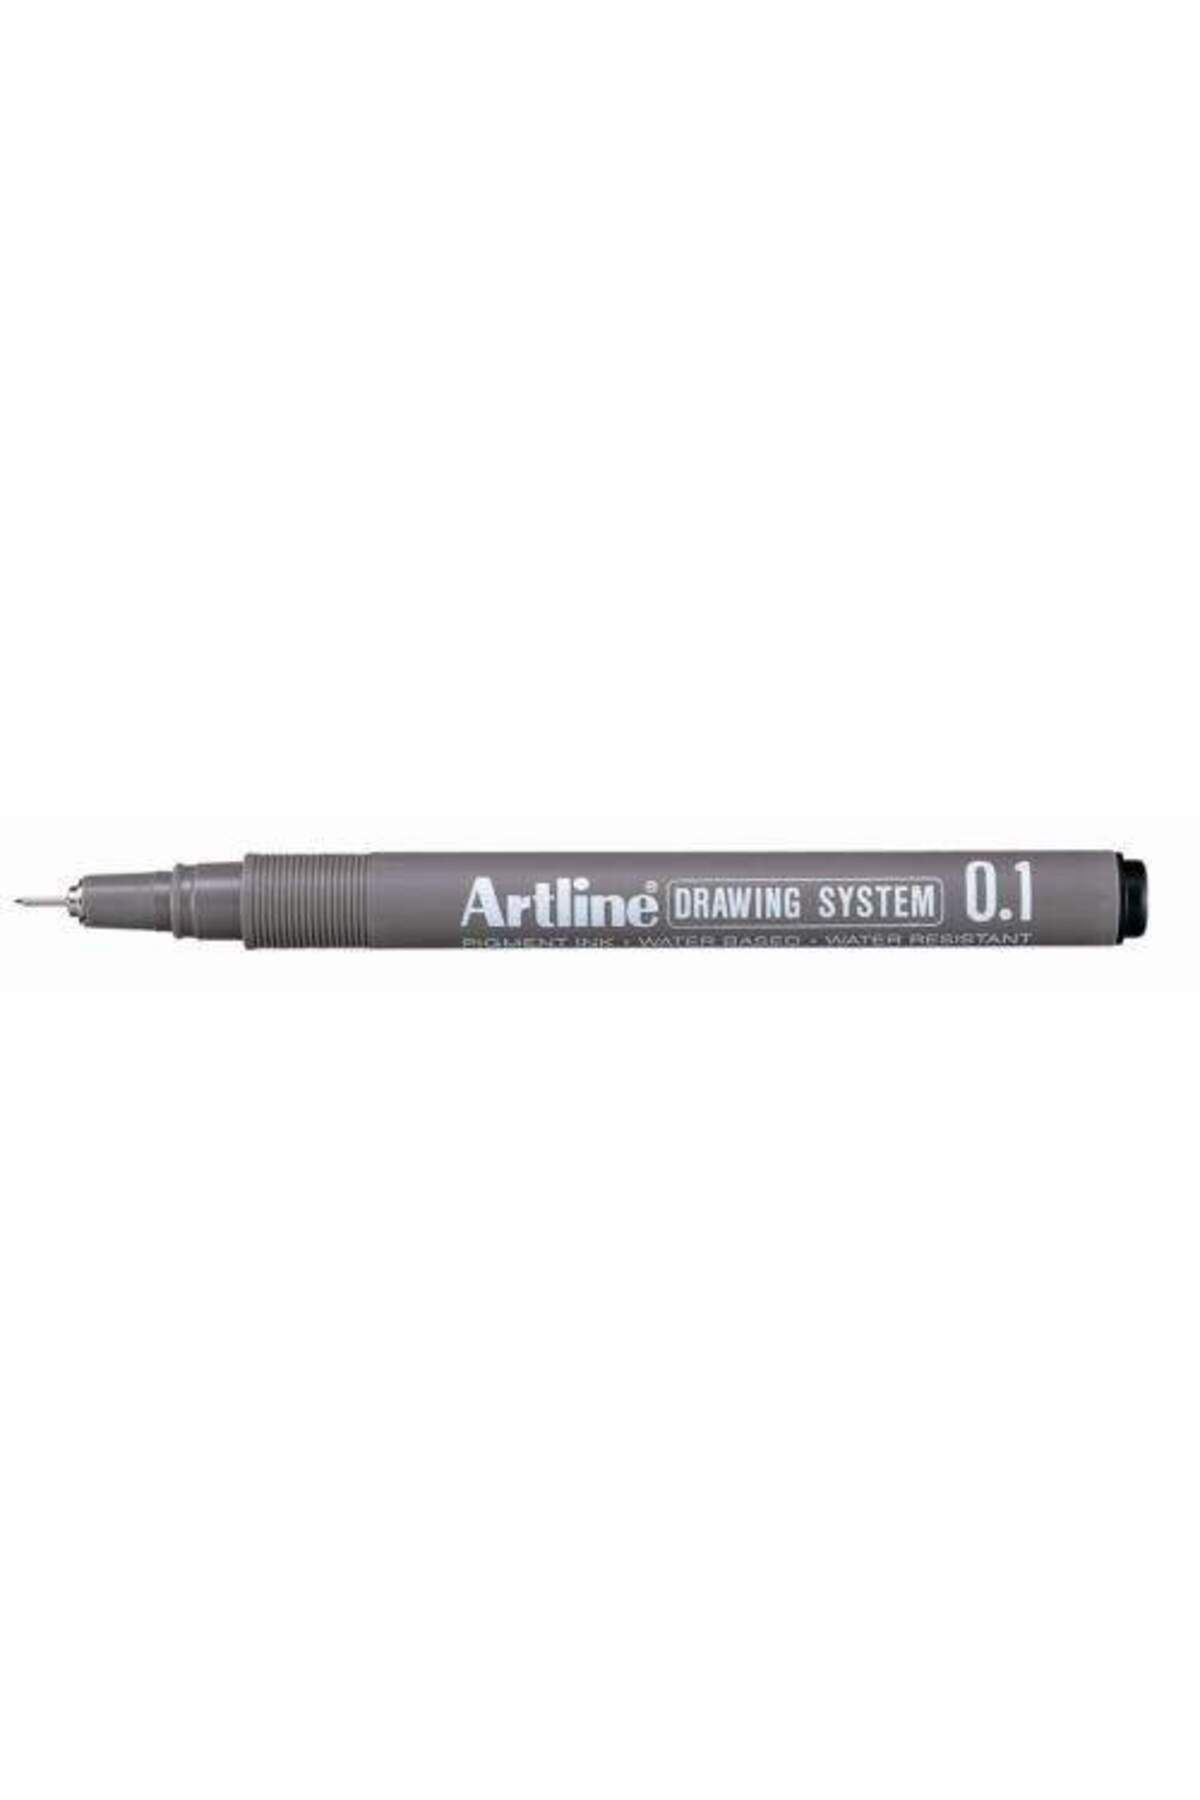 artline Çizim Kalemi 0.1 Mm Siyah Ek231